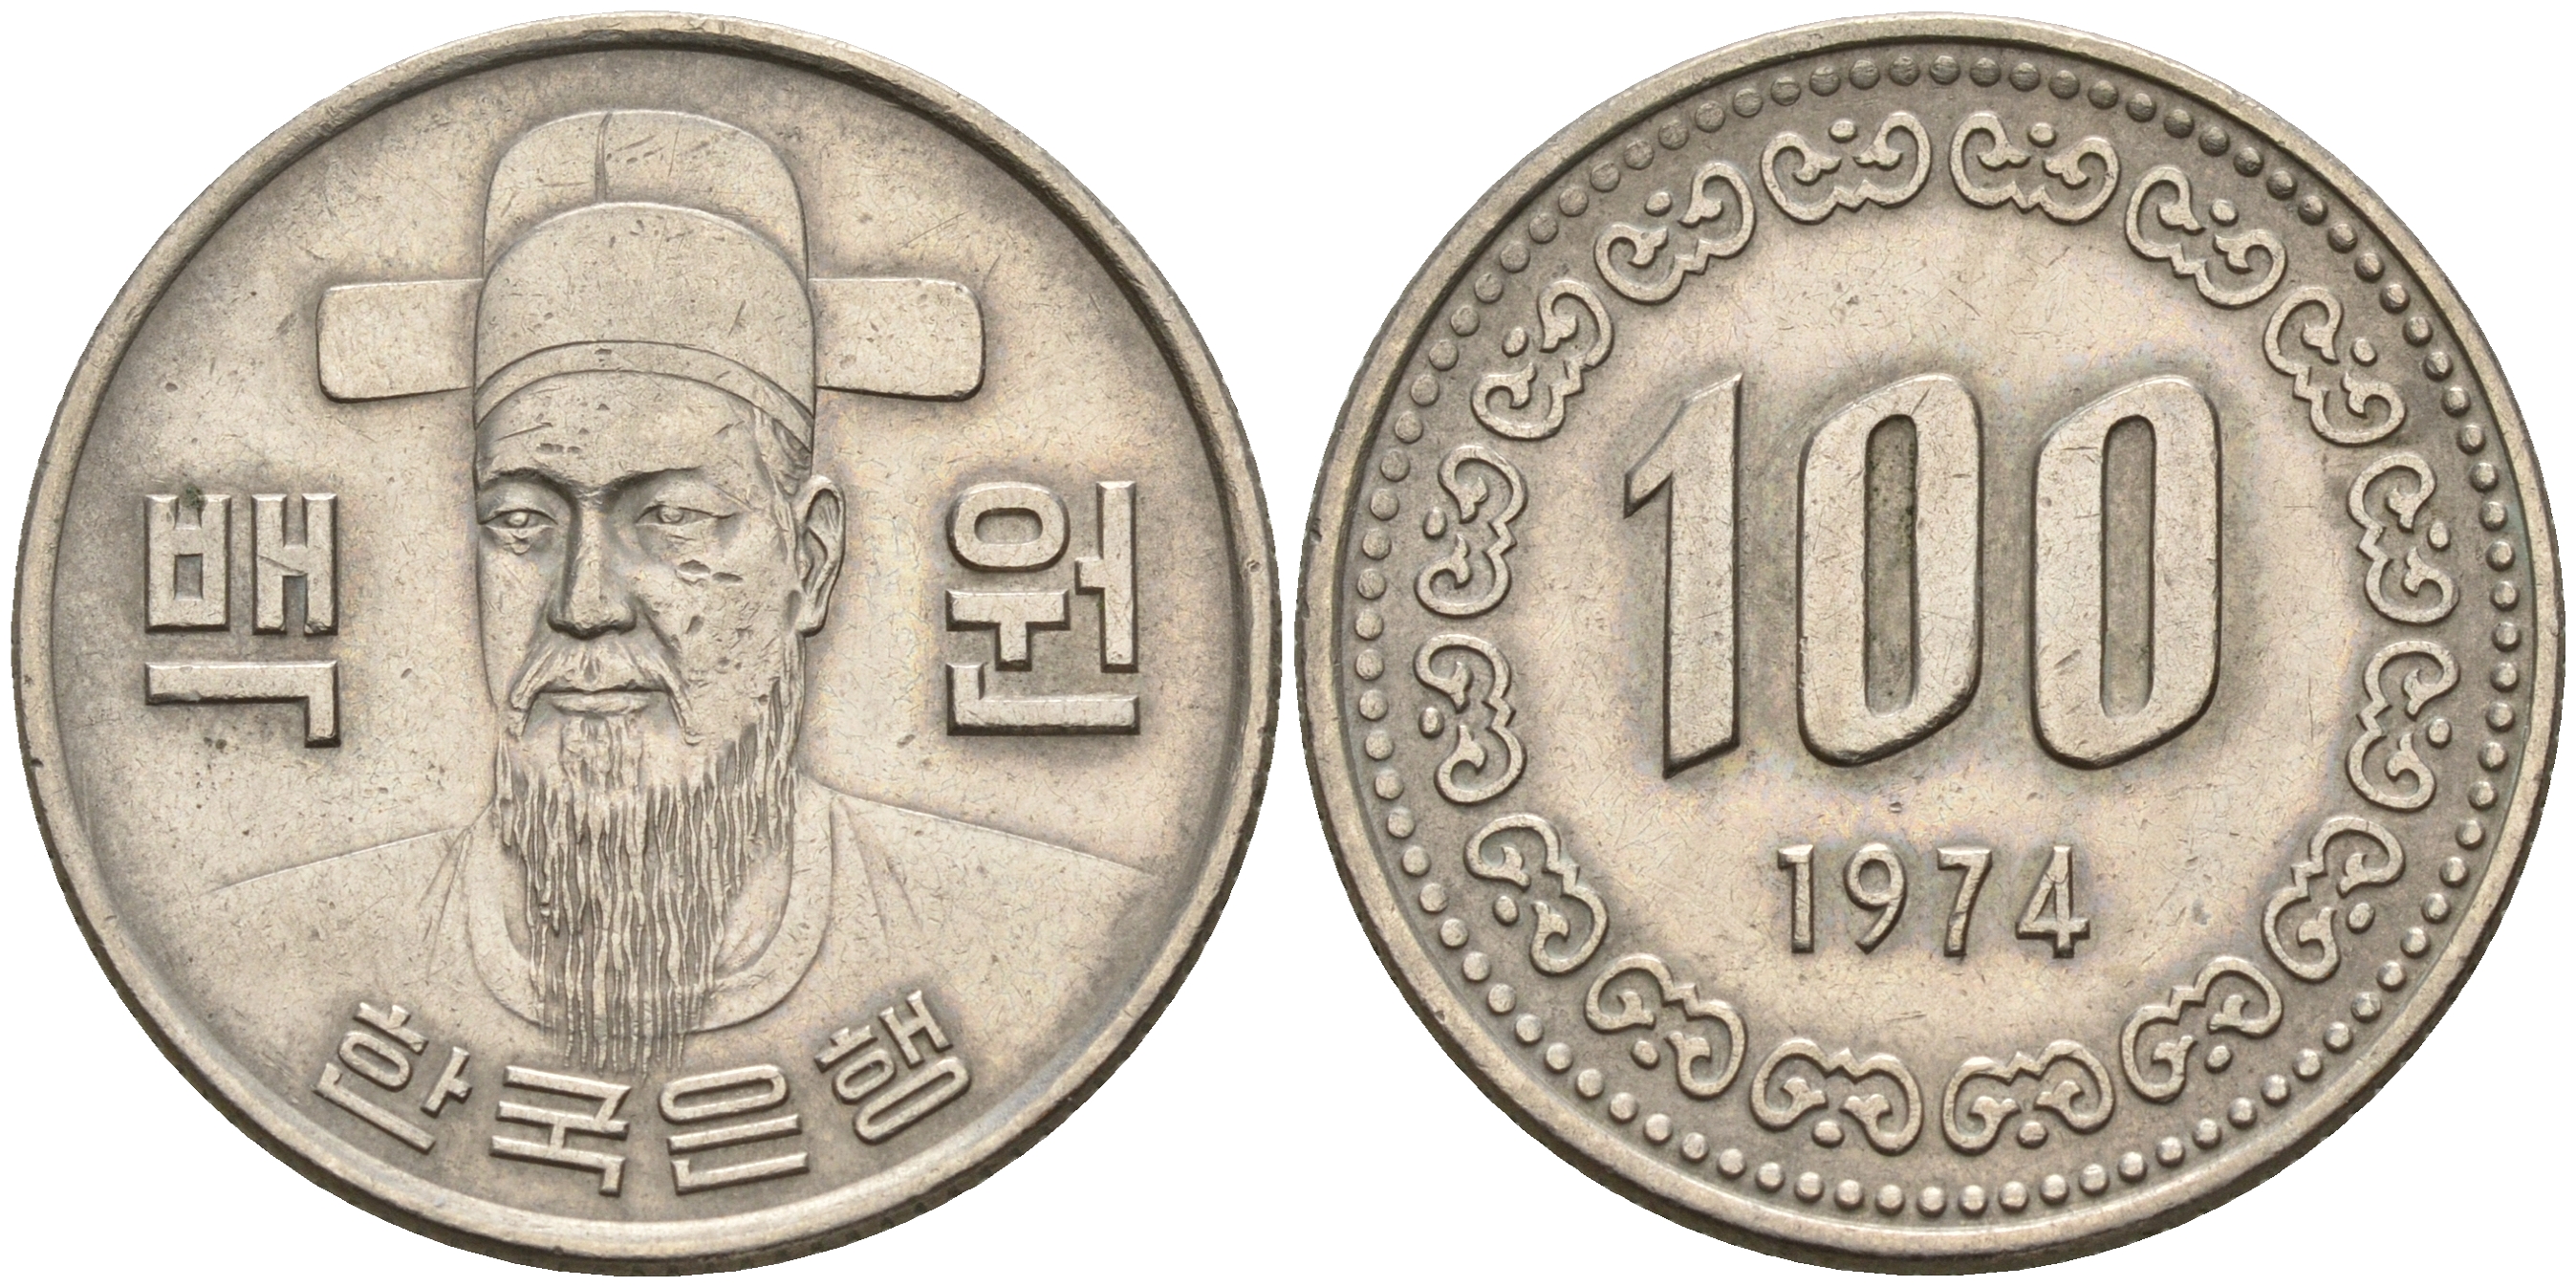 100 вон это сколько. Южная Корея 100 вон 1986. Монета Южной Кореи 100 вон. Корейская монета номинал 100 вон. Южная Корея 100 вон (иностранные монеты).